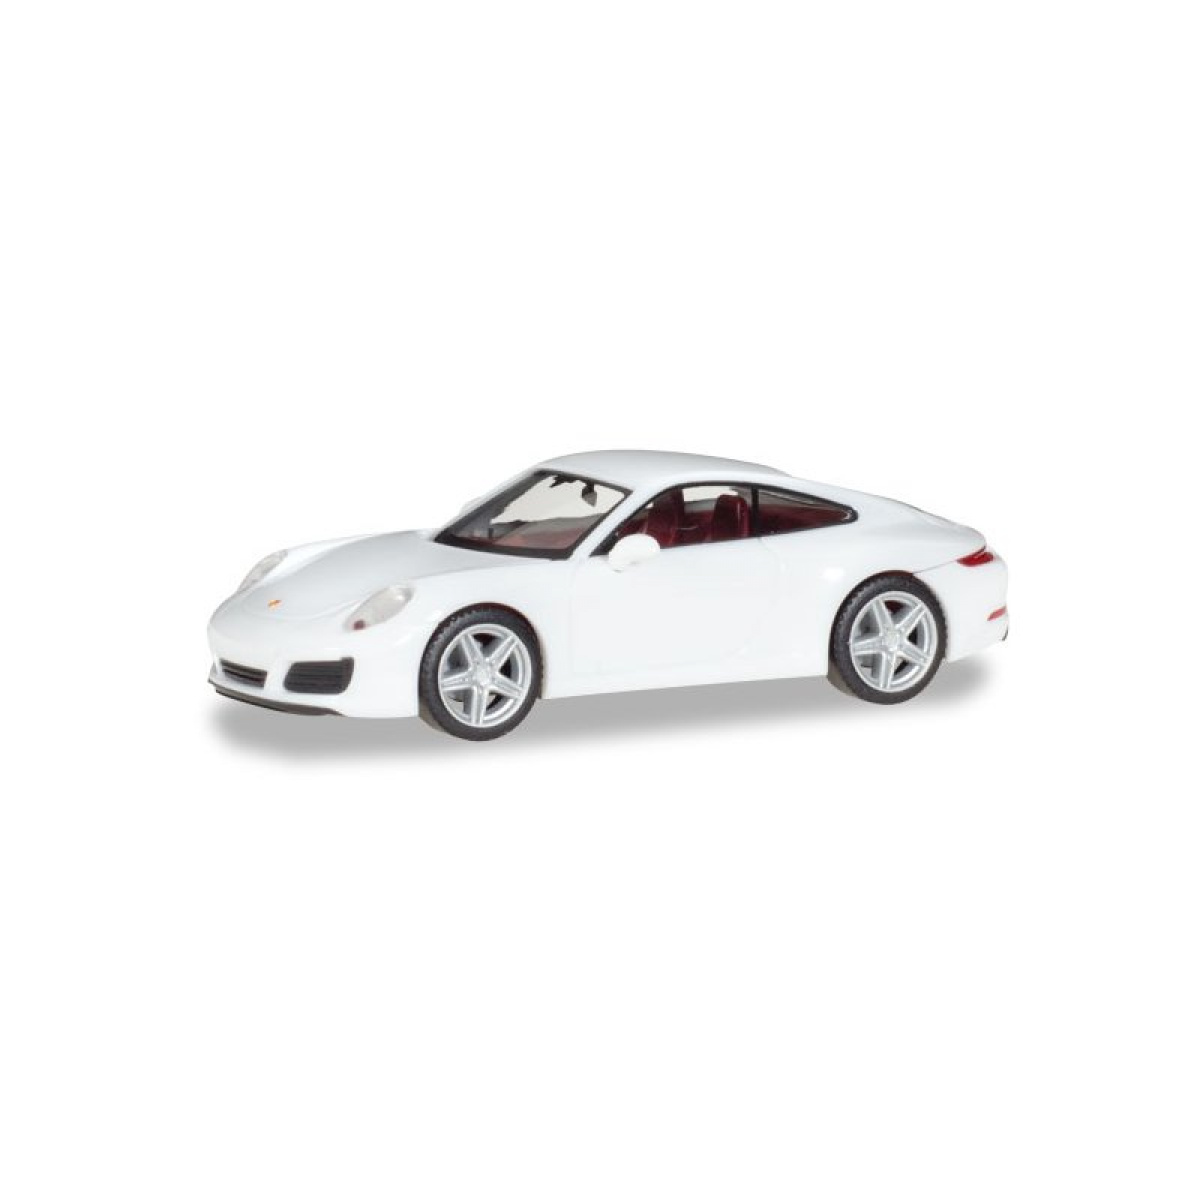 Herpa 028523-002 Porsche 911 Carrera 2 Coupé, weiß